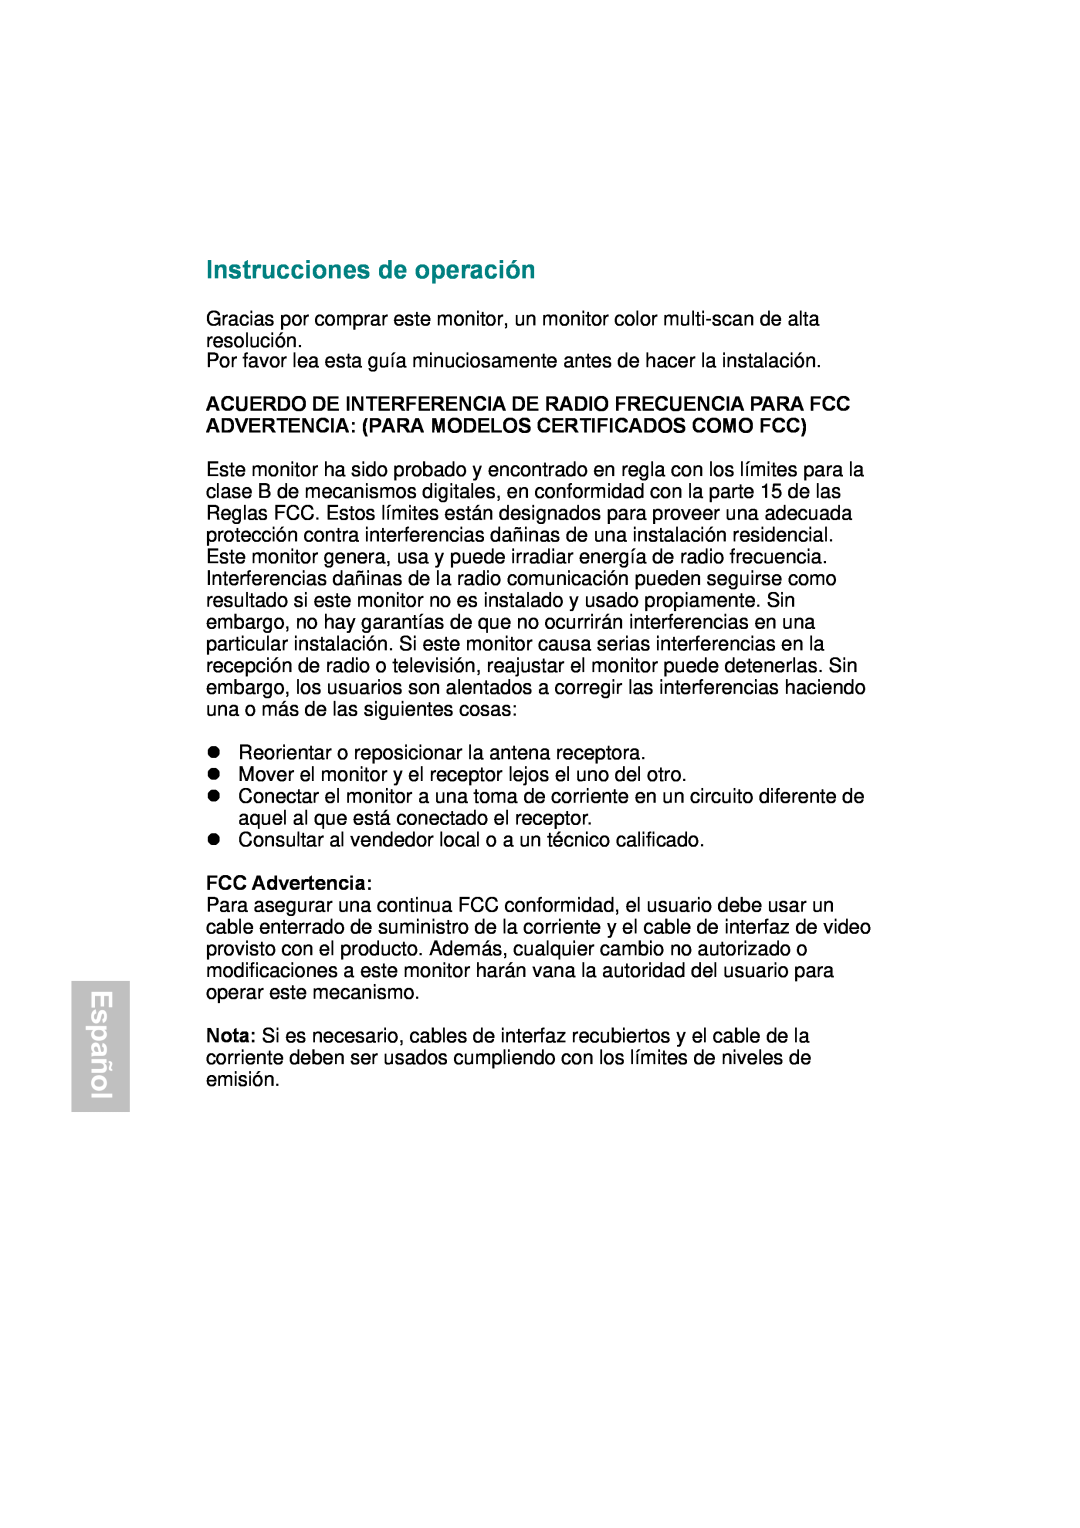 AOC 177Sa-1 manual Español, Instrucciones de operación, FCC Advertencia 